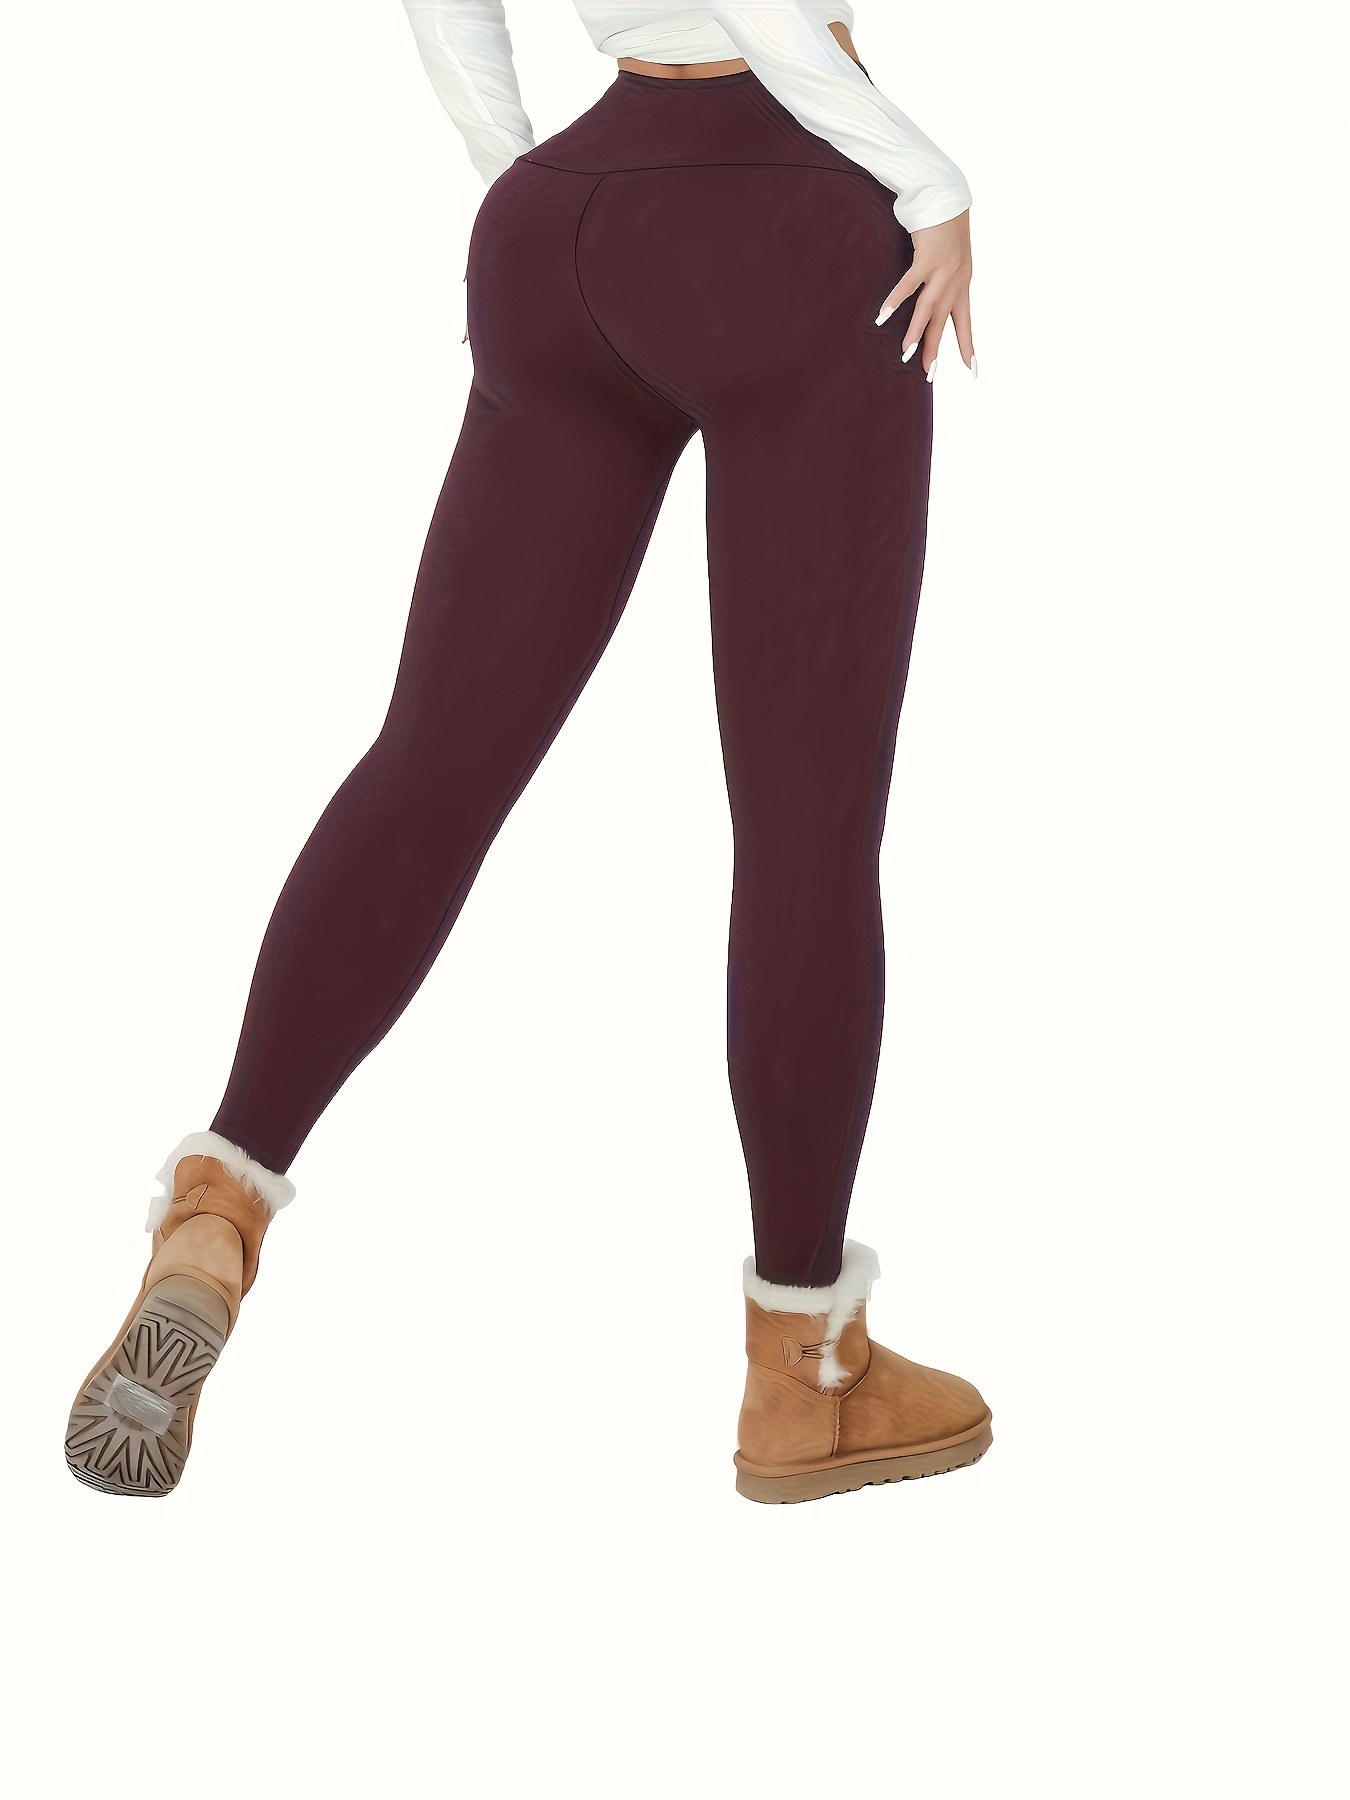  Meoliny - Leggings de cintura alta para mujer, con forro polar,  pantalones ajustados gruesos de felpa, pantalones térmicos cálidos de  invierno para yoga y deporte, gris oscuro, 33.3 pulgadas : Ropa